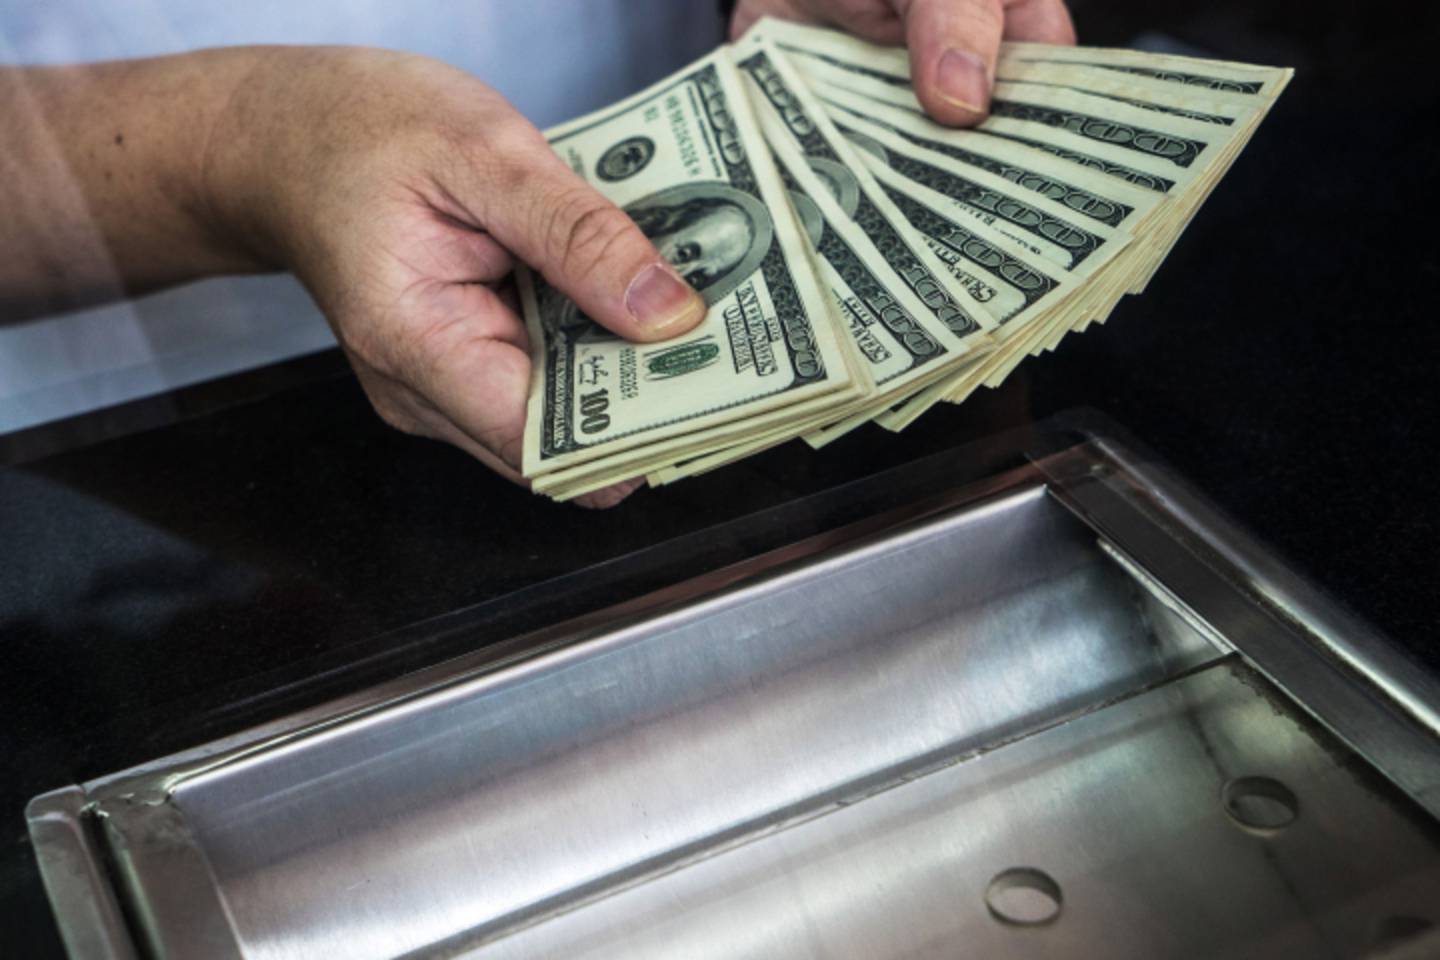 Un hombre sostiene billetes de cien dólares estadounidenses en una tienda de cambio.